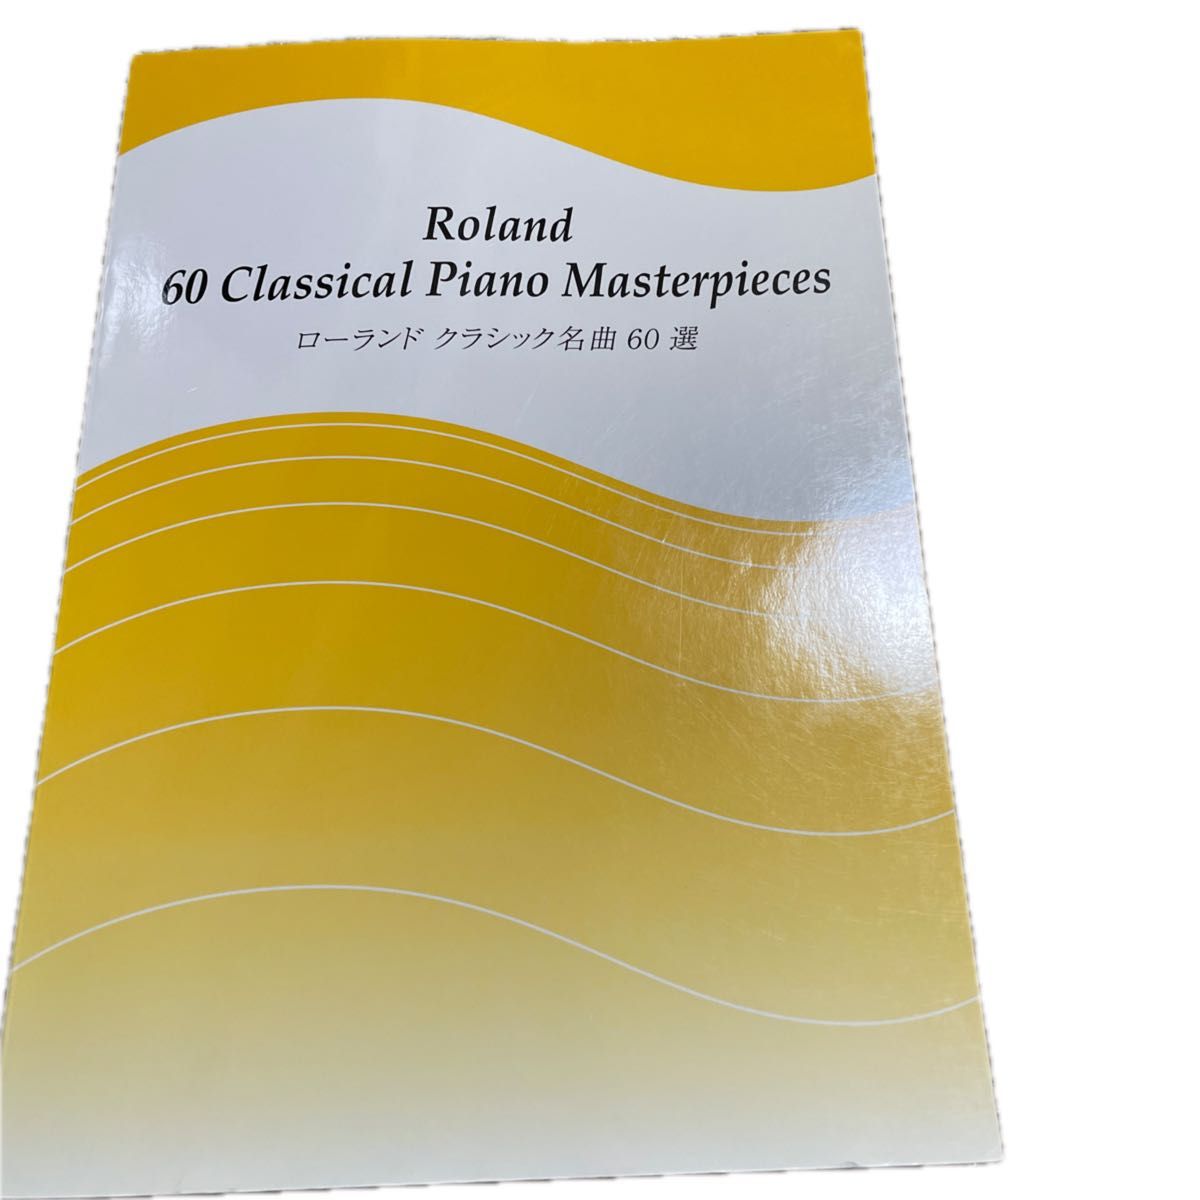 Roland 60 Classical Piano Masterpieces            ローランドクラッシック名曲60